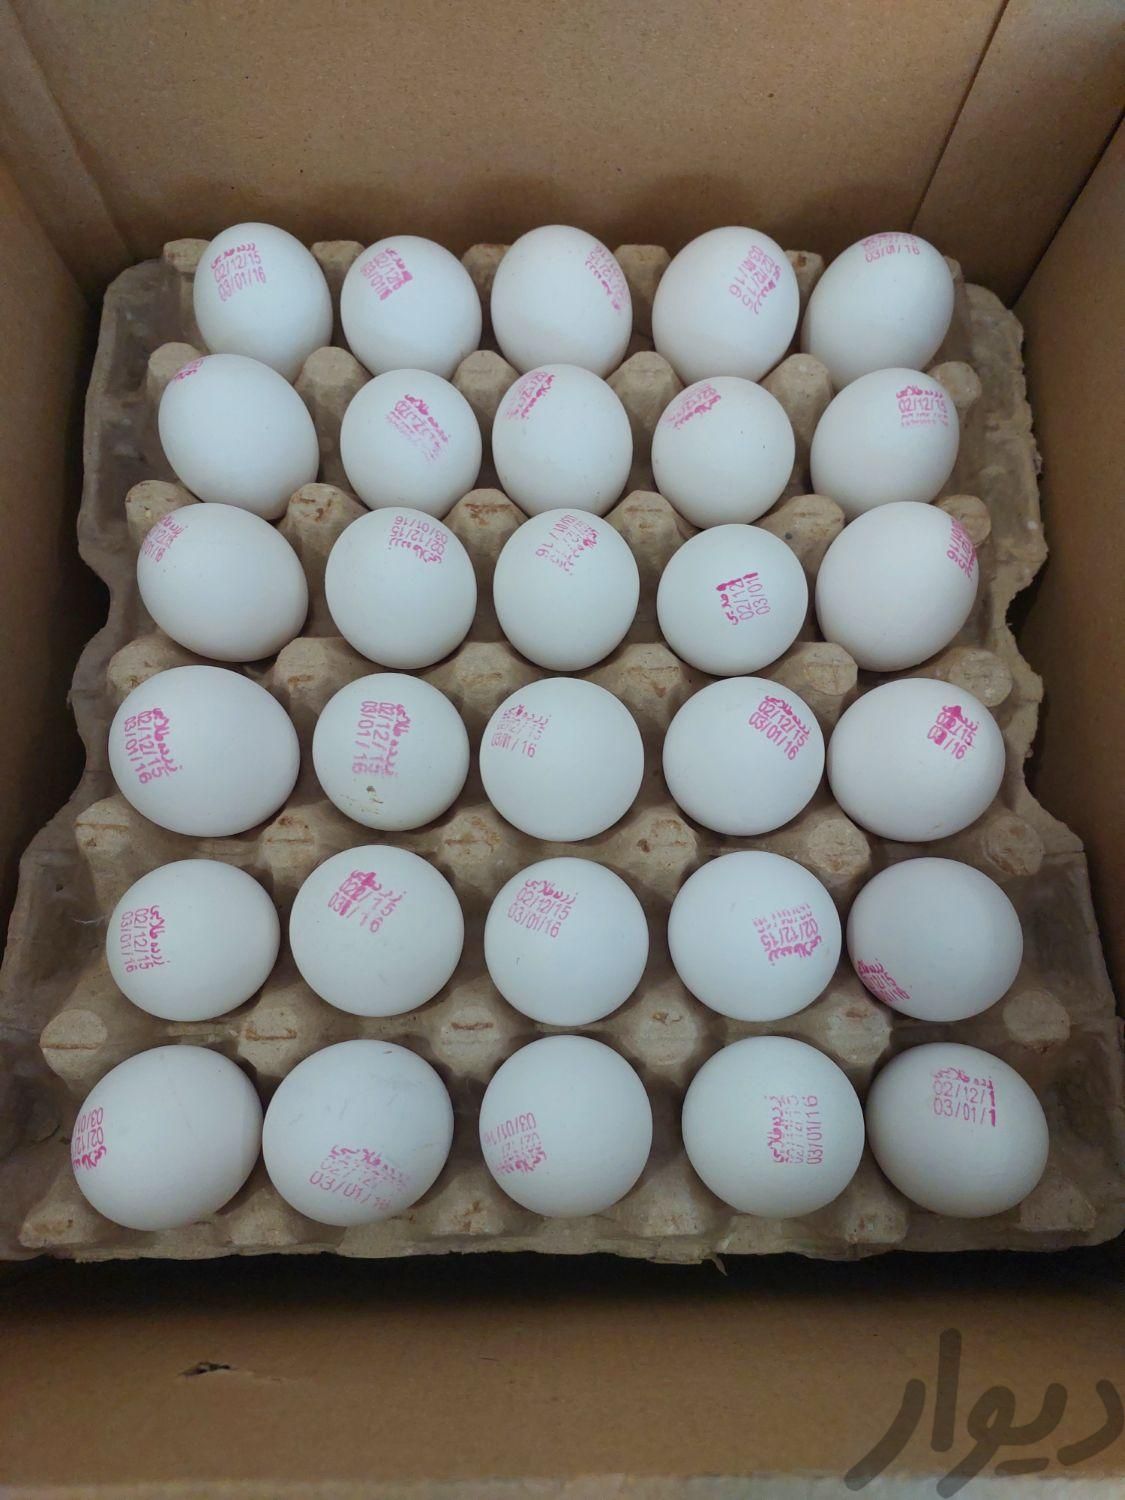 شرکت بازرگانی تهیه و توزیع انواع تخم مرغ سفید|خوردنی و آشامیدنی|اهواز, کوی مهدیس|دیوار